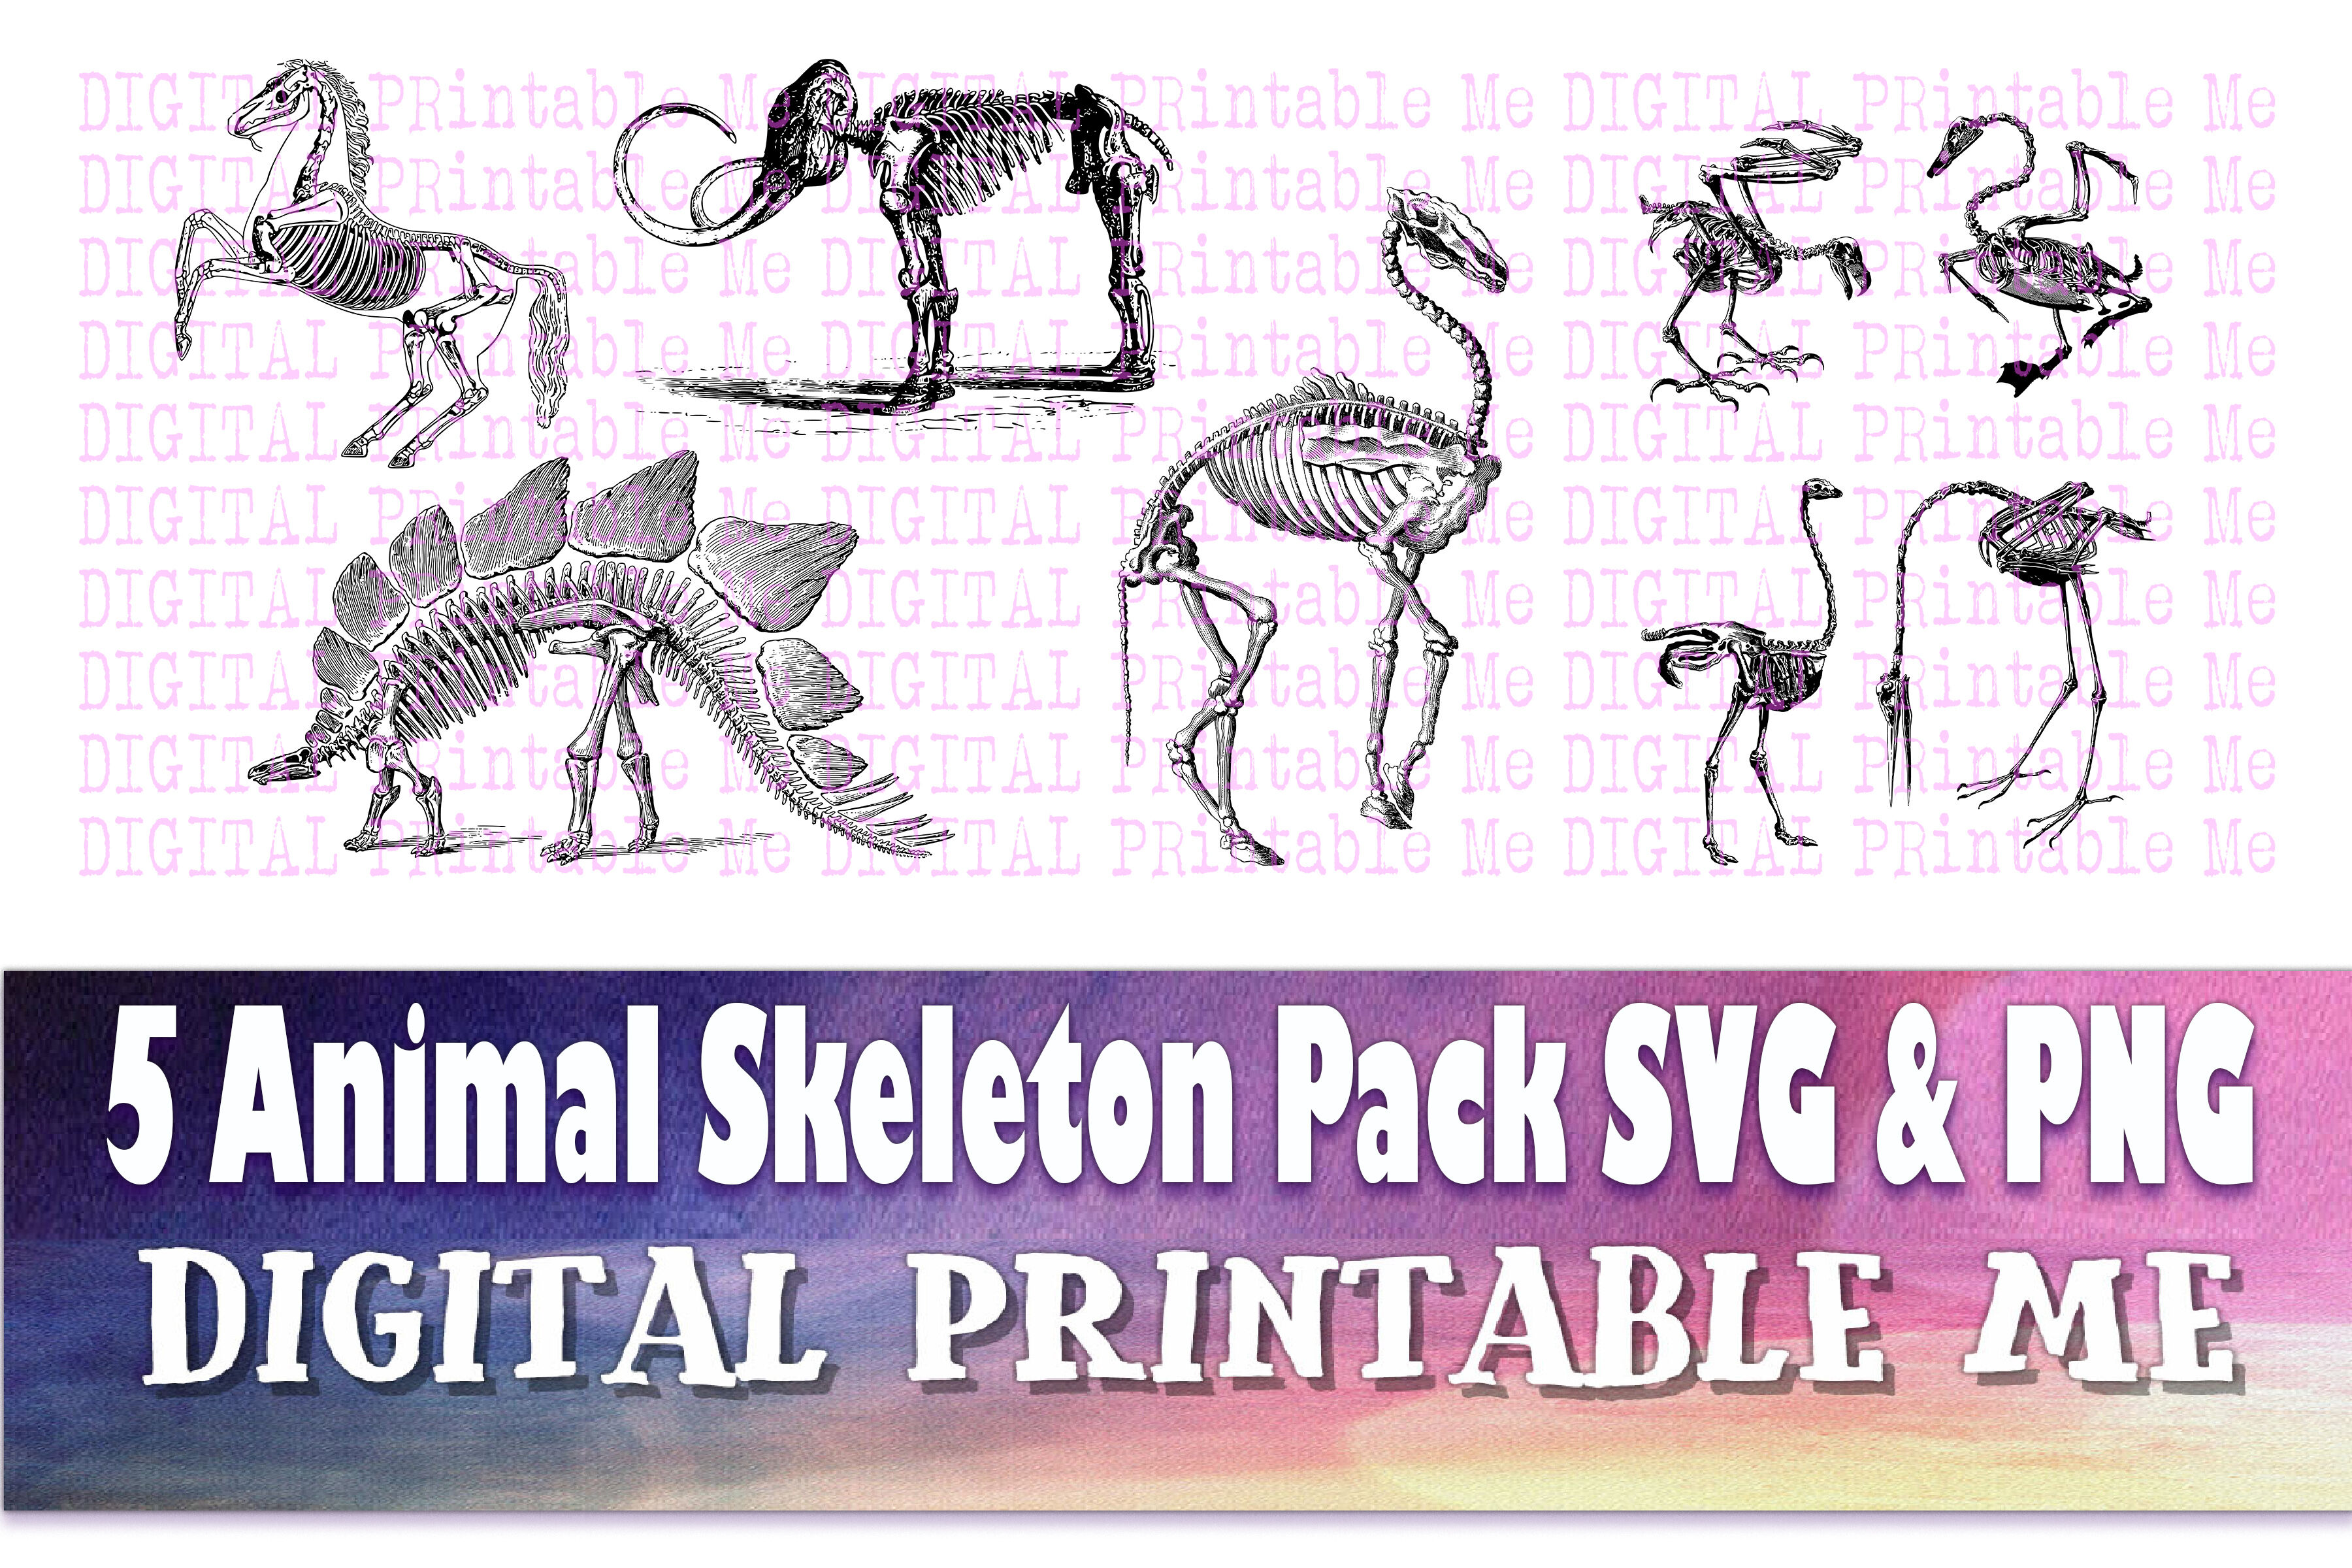 Animal Skeleton Clip Art Pack Svg Png 5 Images Pack Instant Download By Digitalprintableme Thehungryjpeg Com